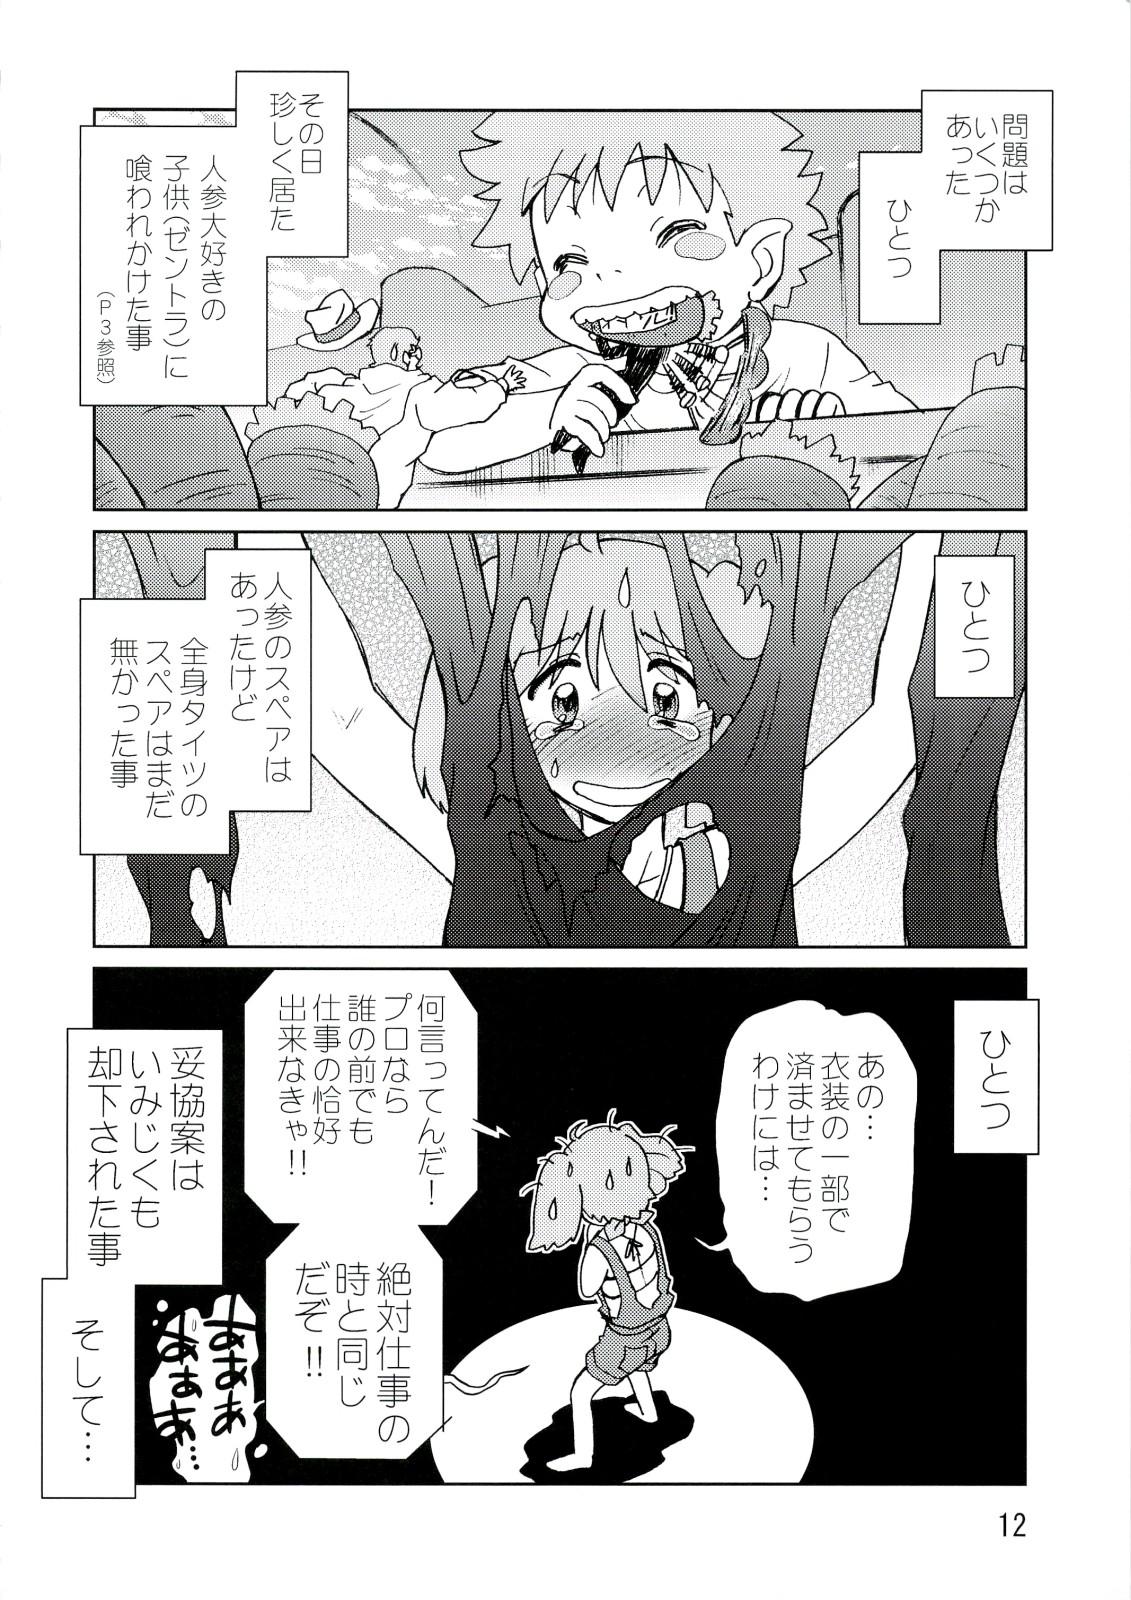 Fetiche Kishou Tenketsu 6 - Macross frontier Pounded - Page 11